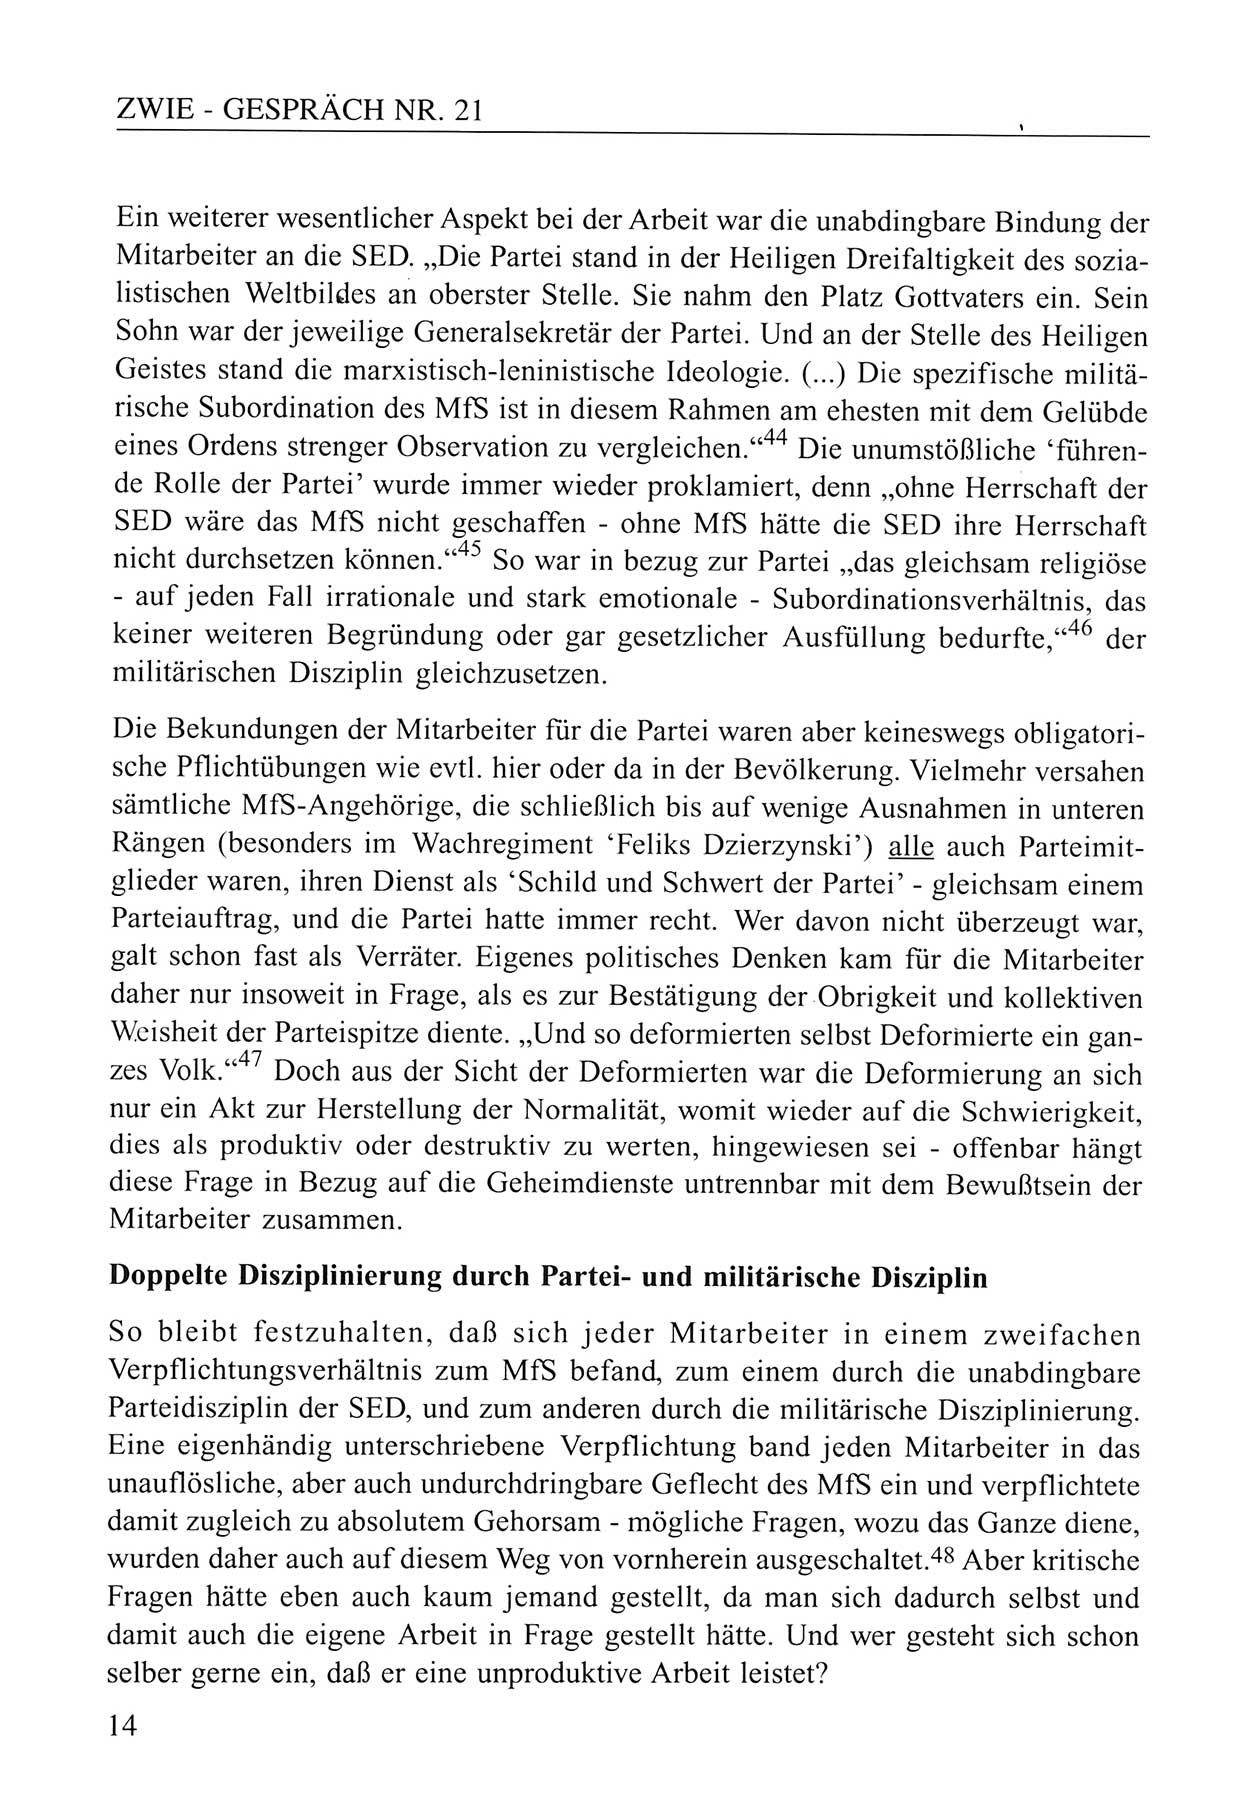 Zwie-Gespräch, Beiträge zum Umgang mit der Staatssicherheits-Vergangenheit [Deutsche Demokratische Republik (DDR)], Ausgabe Nr. 21, Berlin 1994, Seite 14 (Zwie-Gespr. Ausg. 21 1994, S. 14)